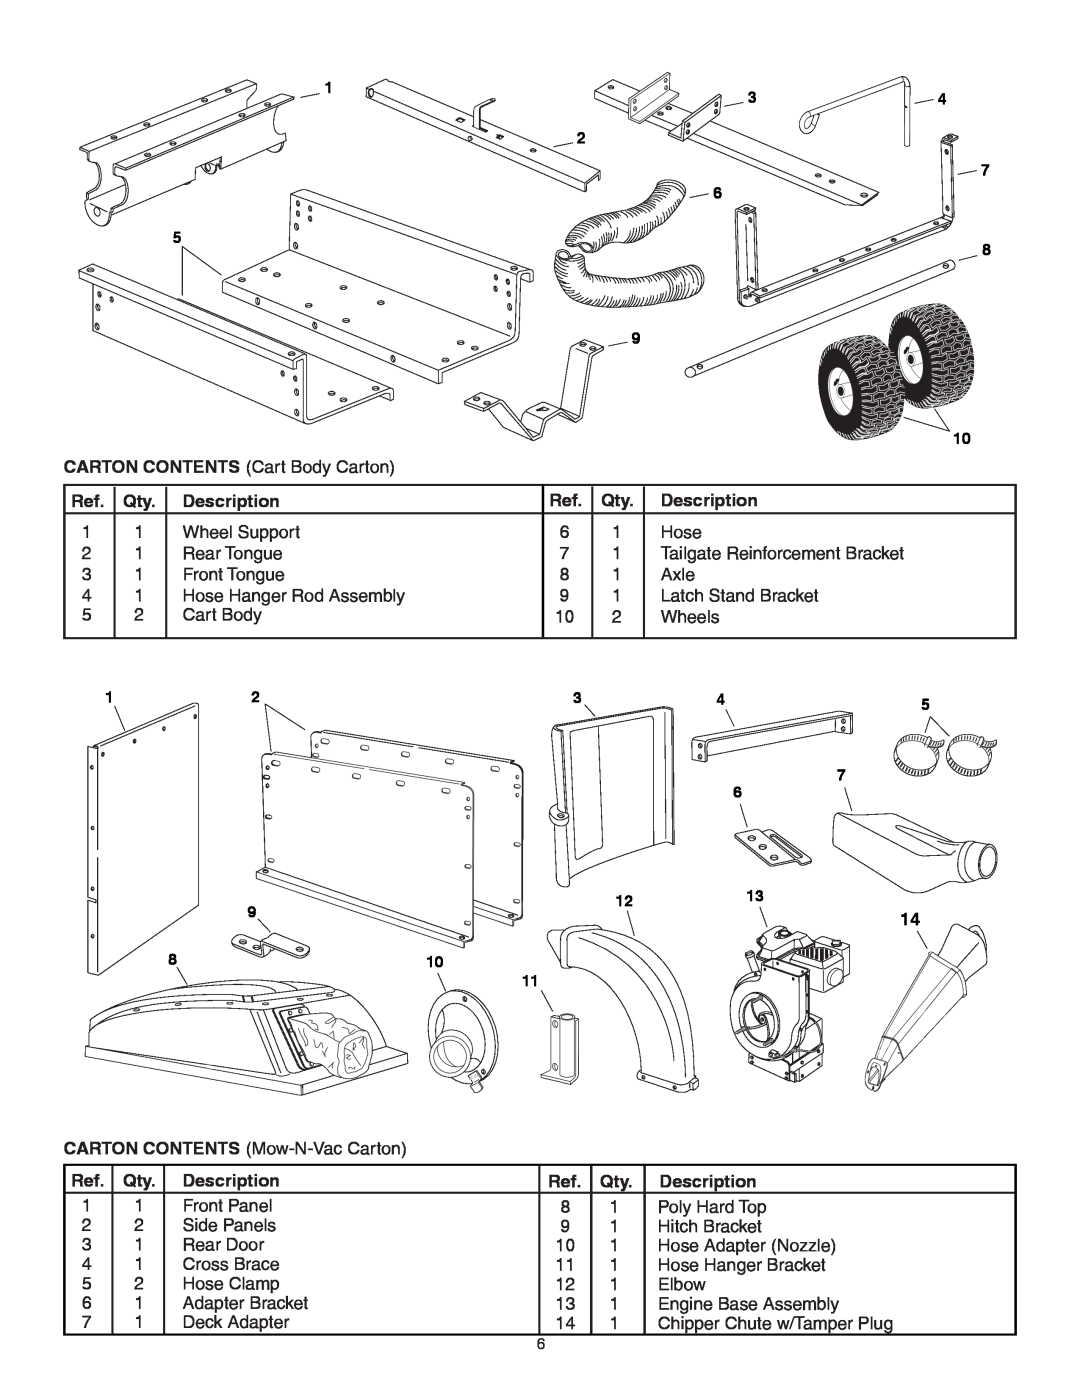 Sears 502493, 552493 manual CARTON CONTENTS Cart Body Carton, Description 